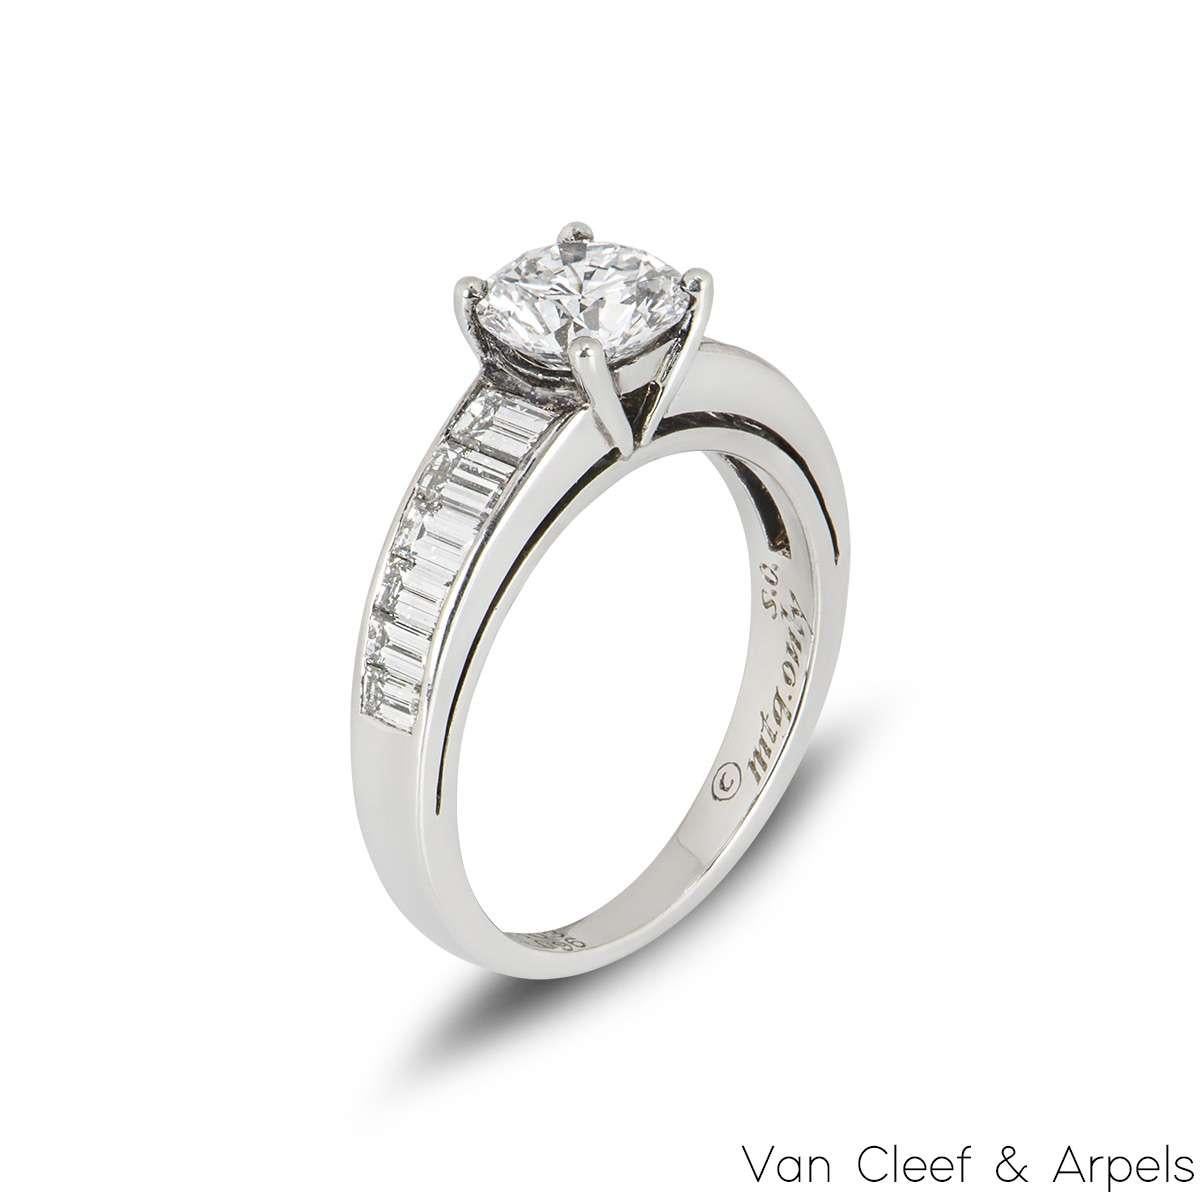 Ein atemberaubender Single Stone Diamantring in Platin von Van Cleef und Arpels. Der Ring ist in der Mitte mit einem runden Diamanten im Brillantschliff in einer Vier-Krallen-Fassung mit einem Gewicht von 1,03 ct besetzt. Er hat eine Farbe von D-E